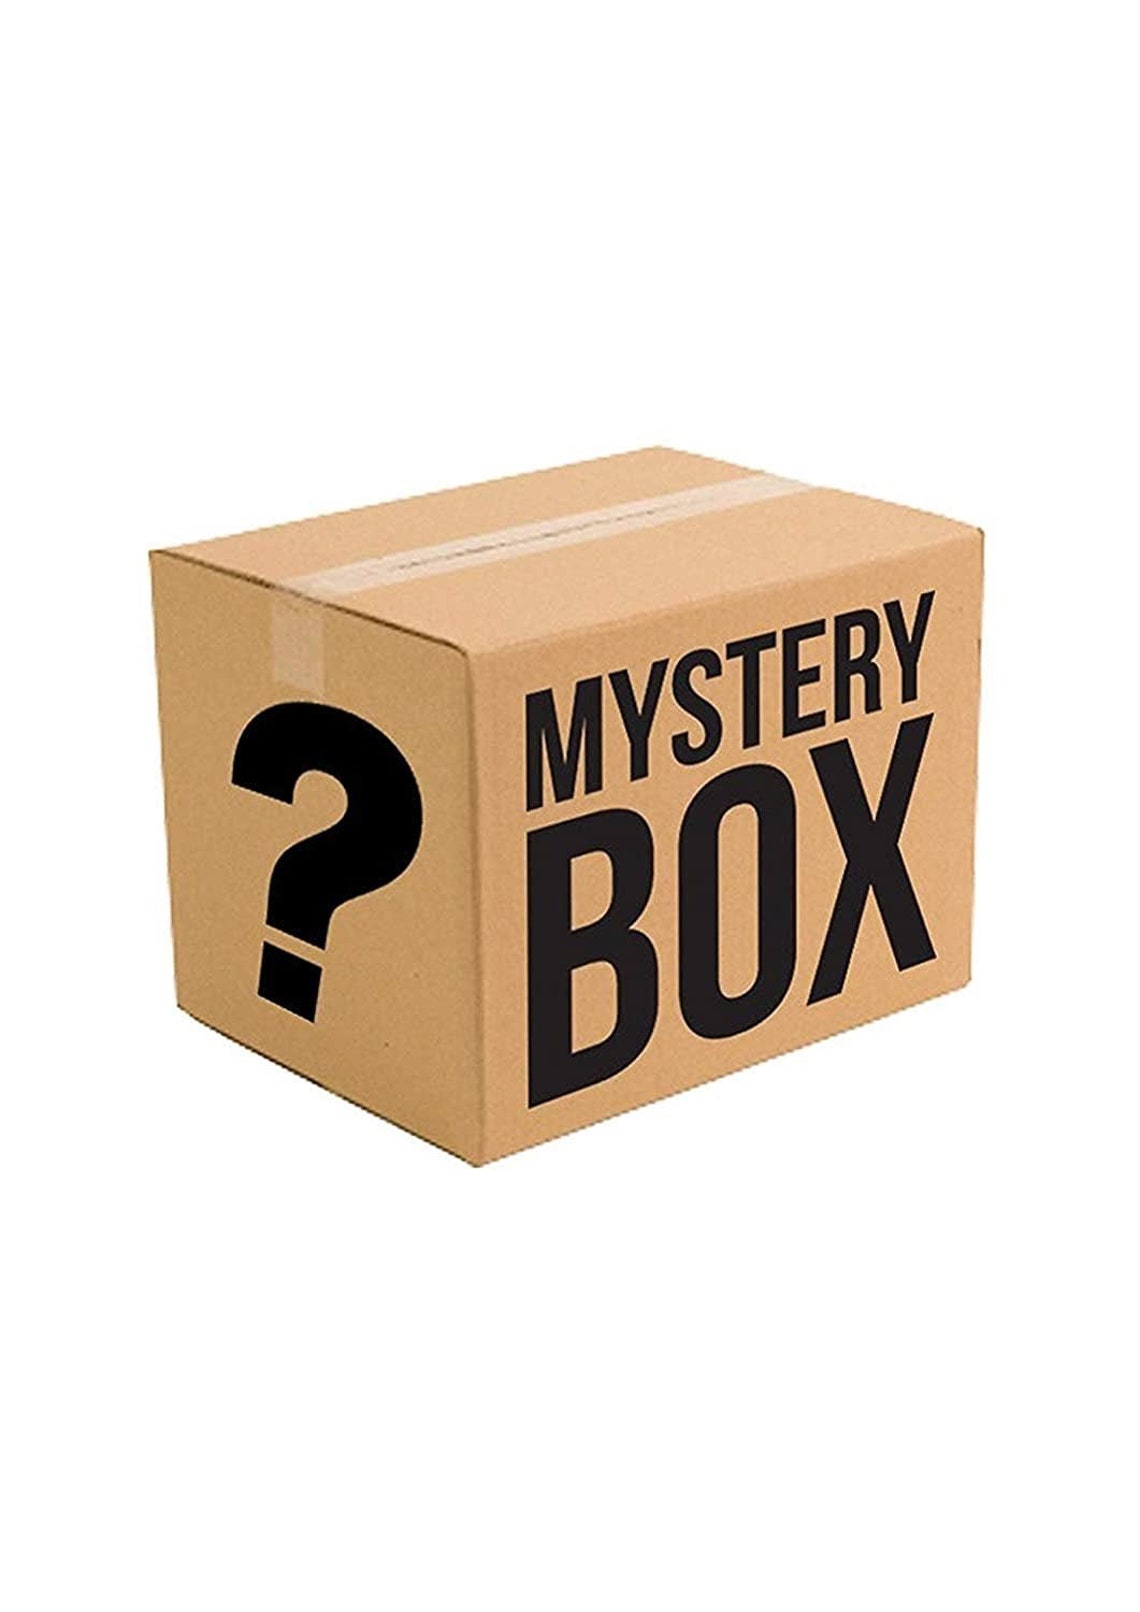 Mystery box Etsy